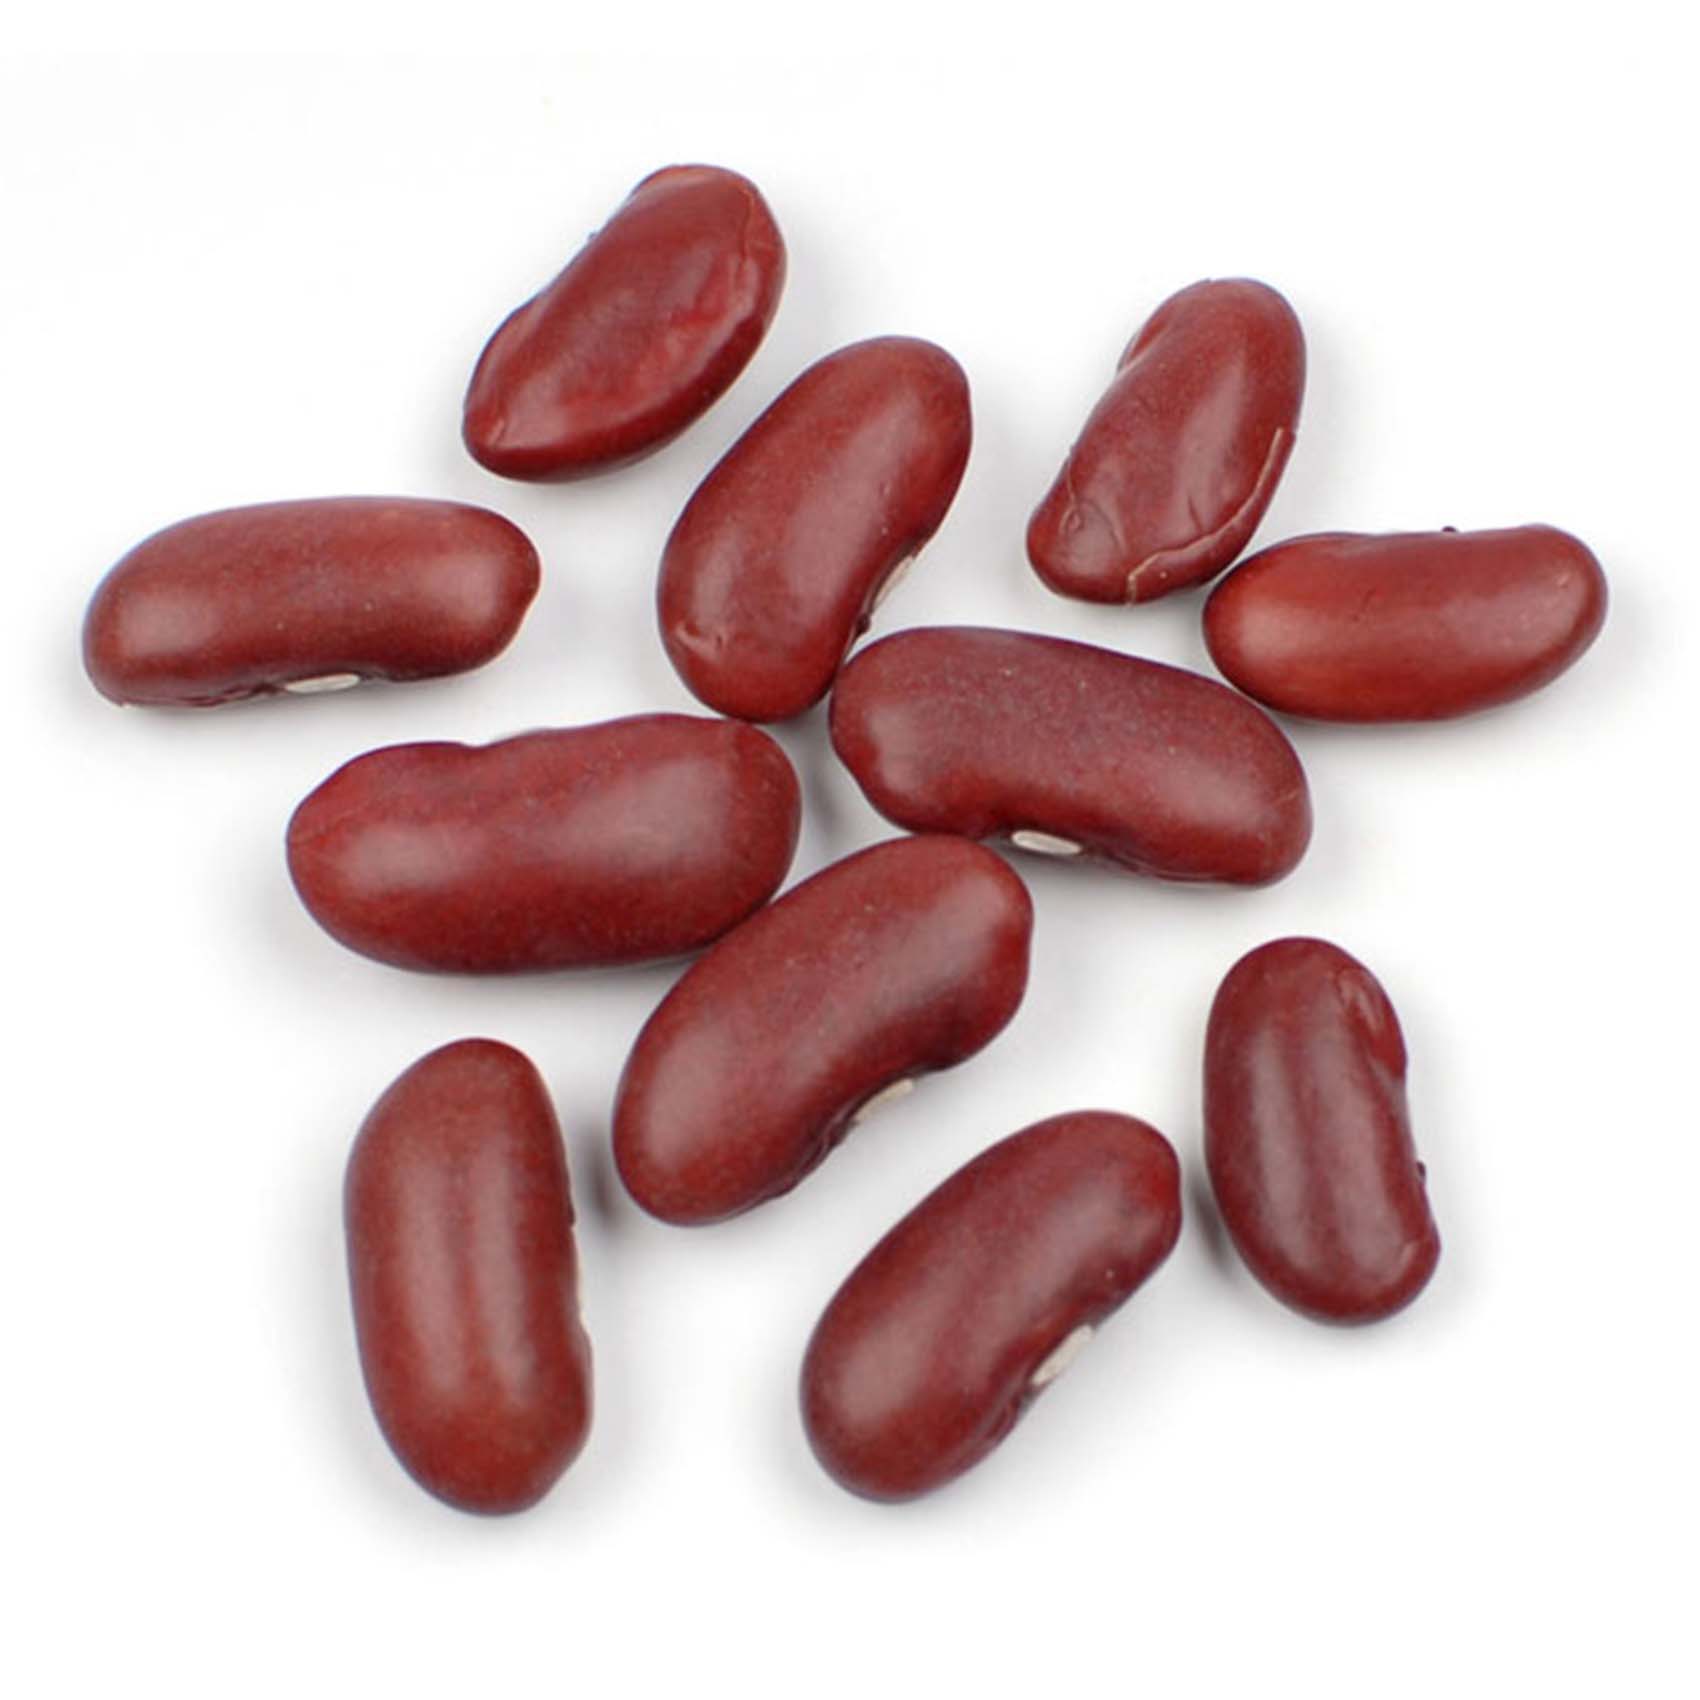 Eva Dark Red Kidney Beans